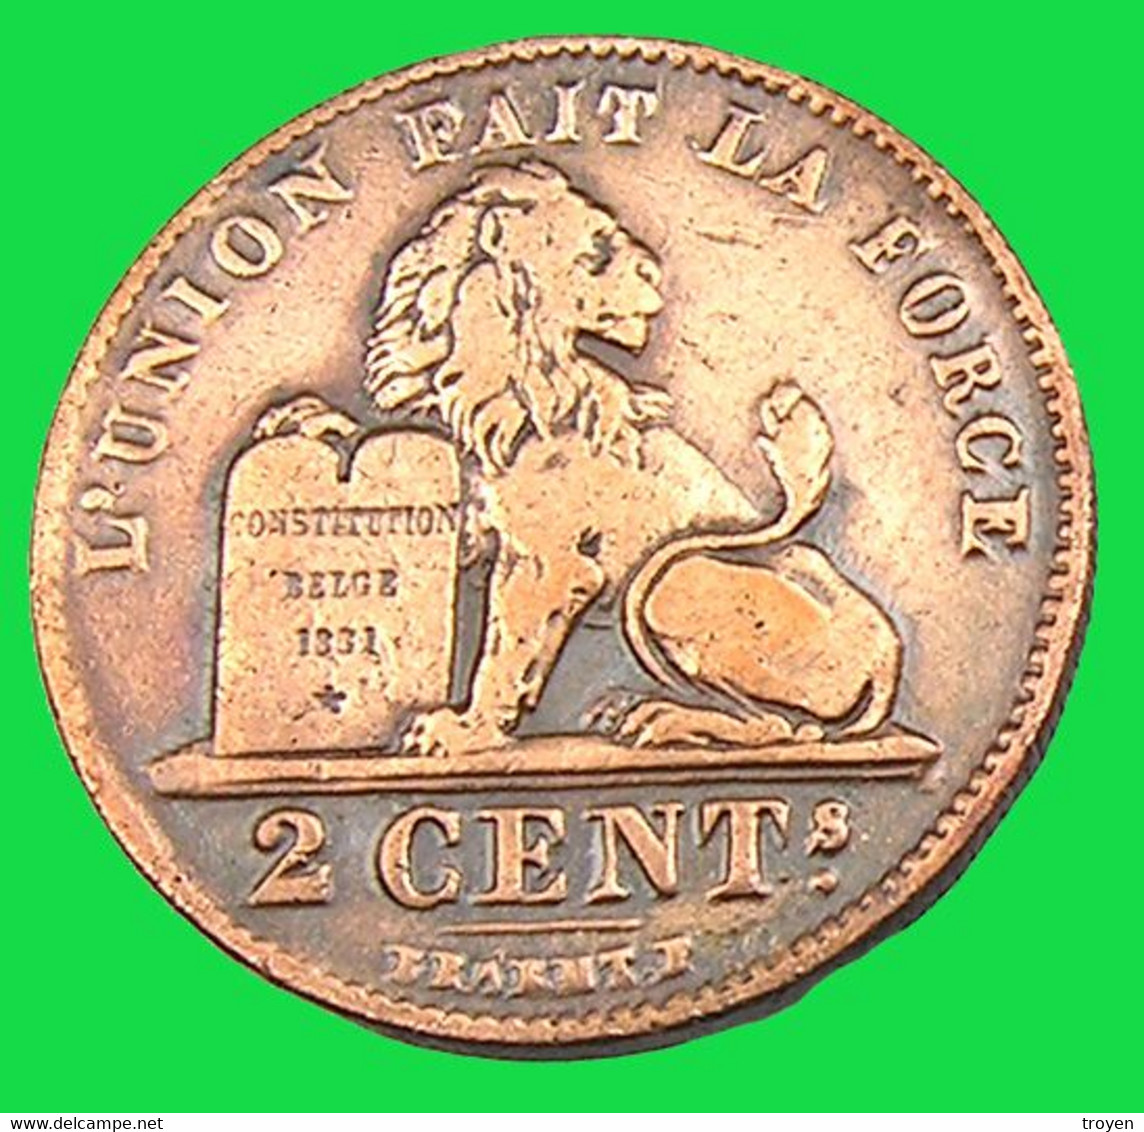 2 Centimes  - Belgique - 1909 - Cuivre - TB + - - 2 Cents